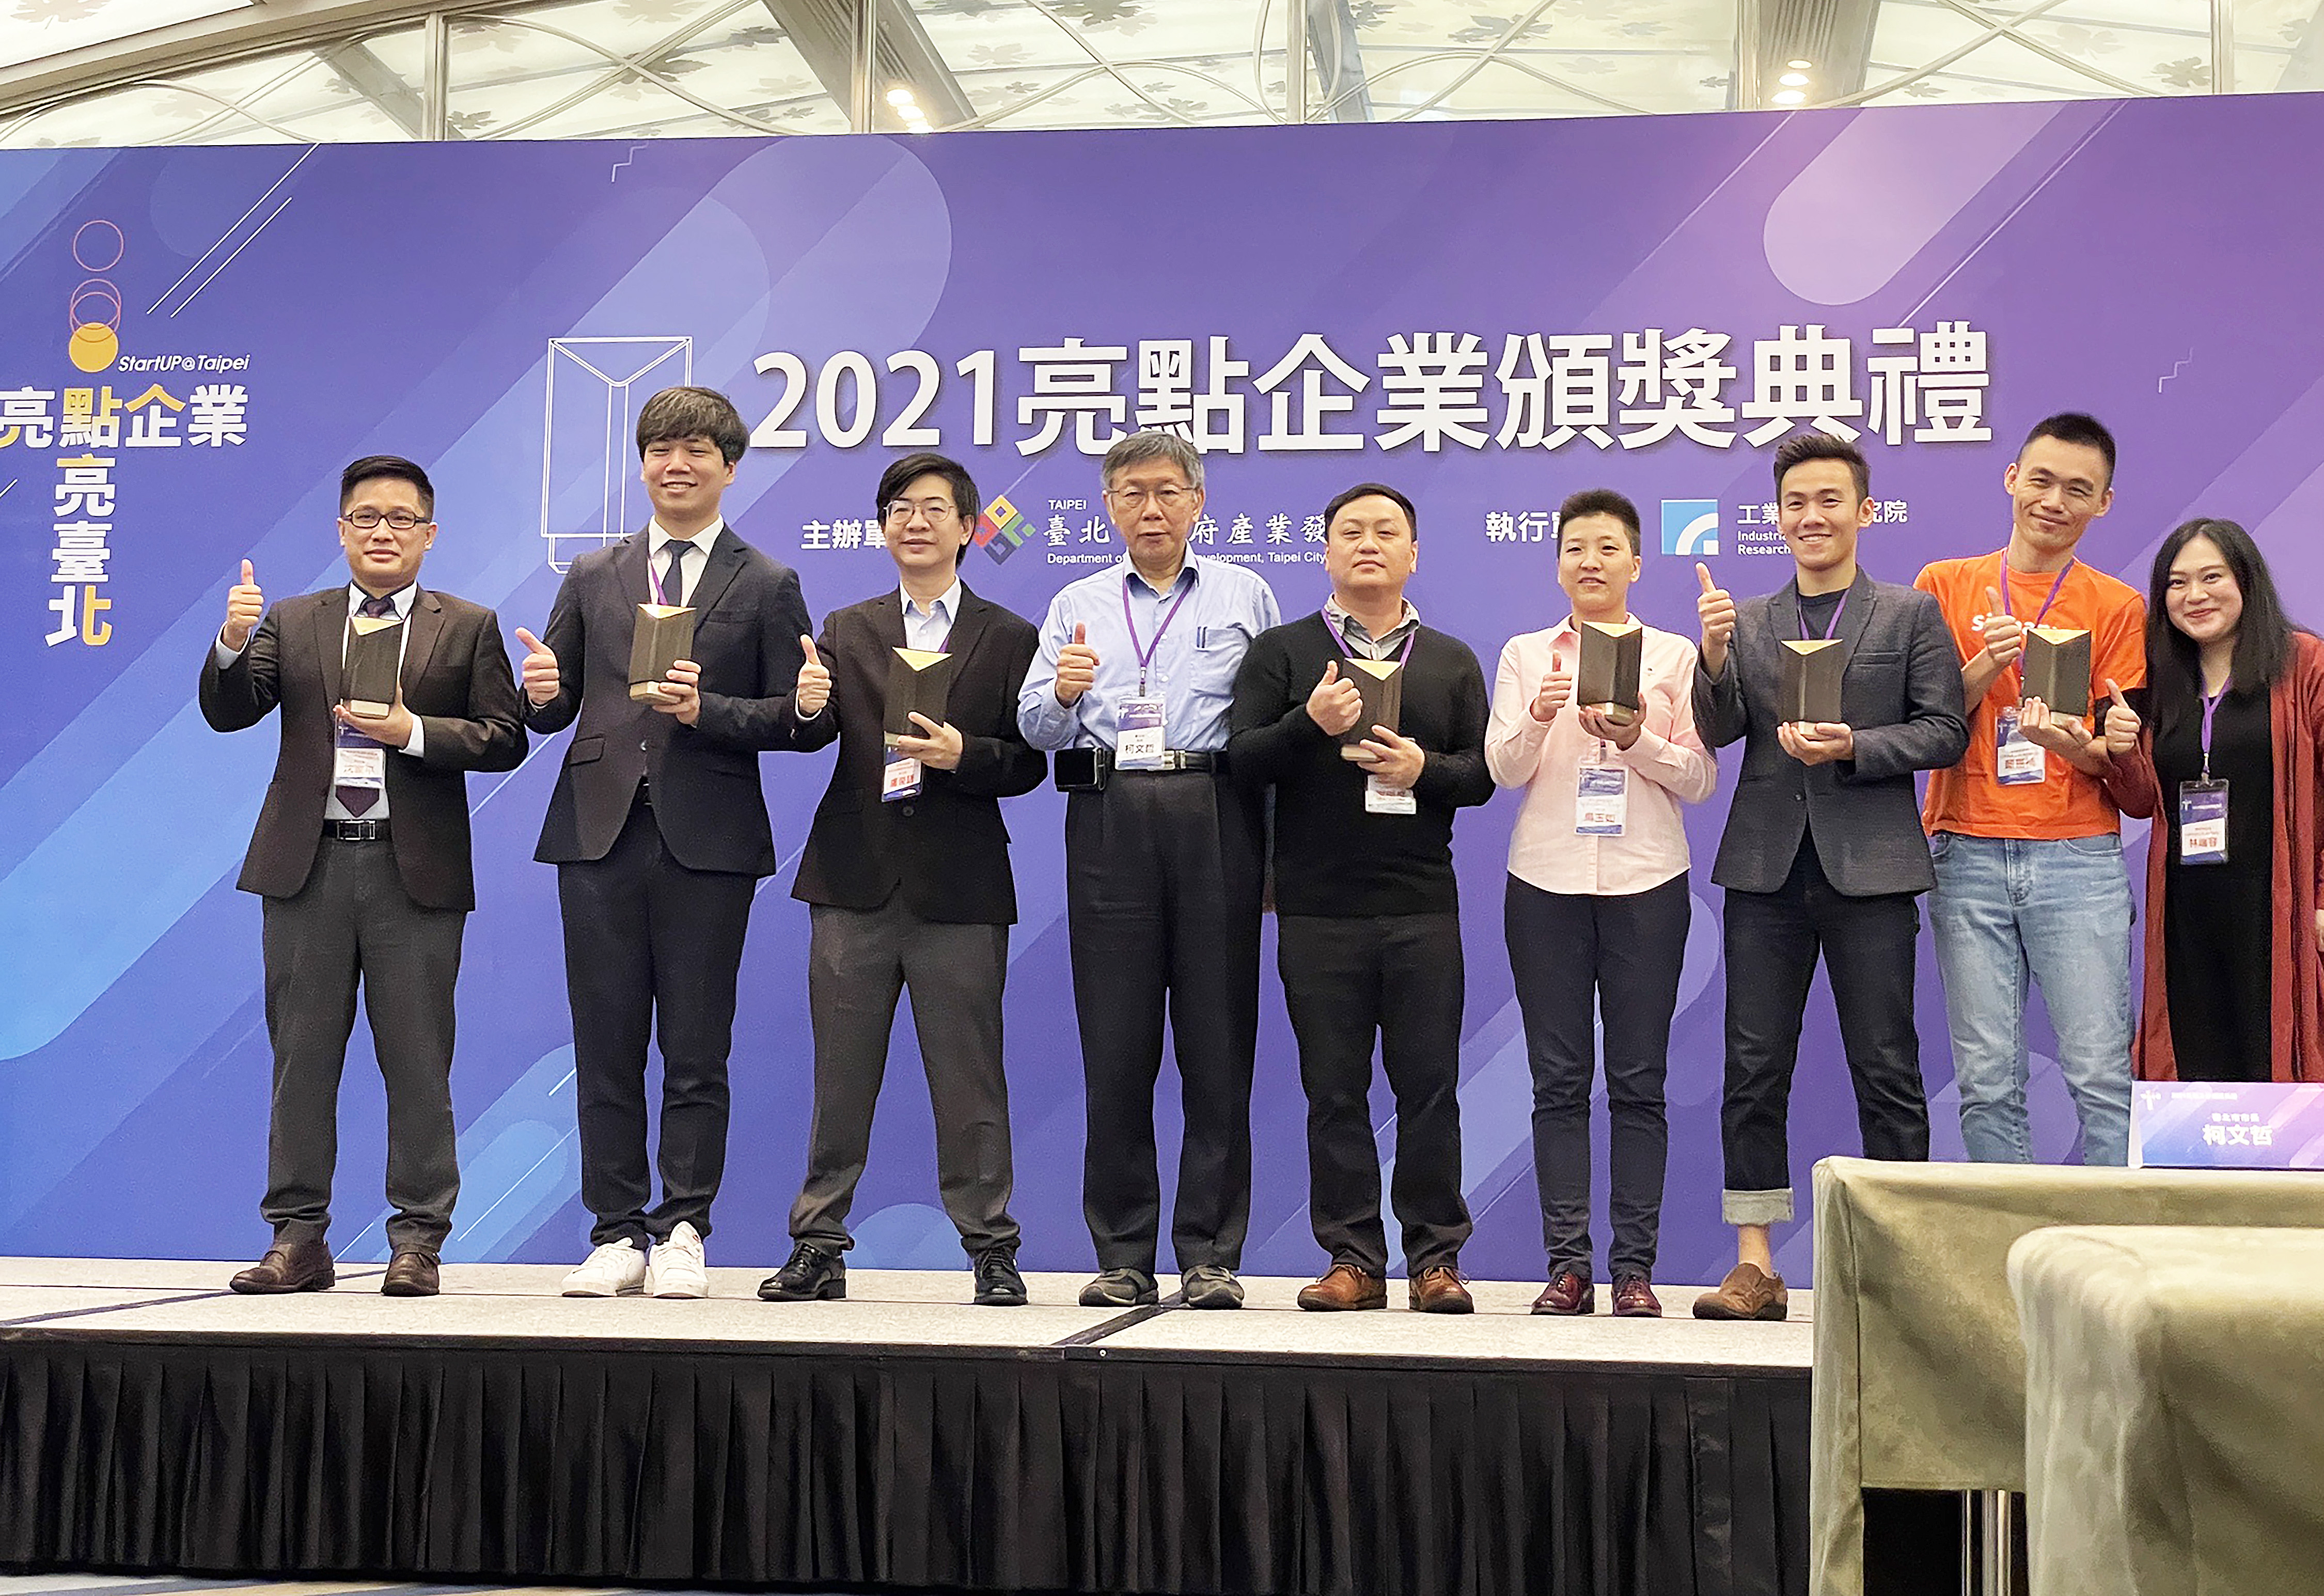 2021亮點企業獎獲獎企業與台北市長柯文哲合影，諾亞克執行長沈家平出席領獎(左一)